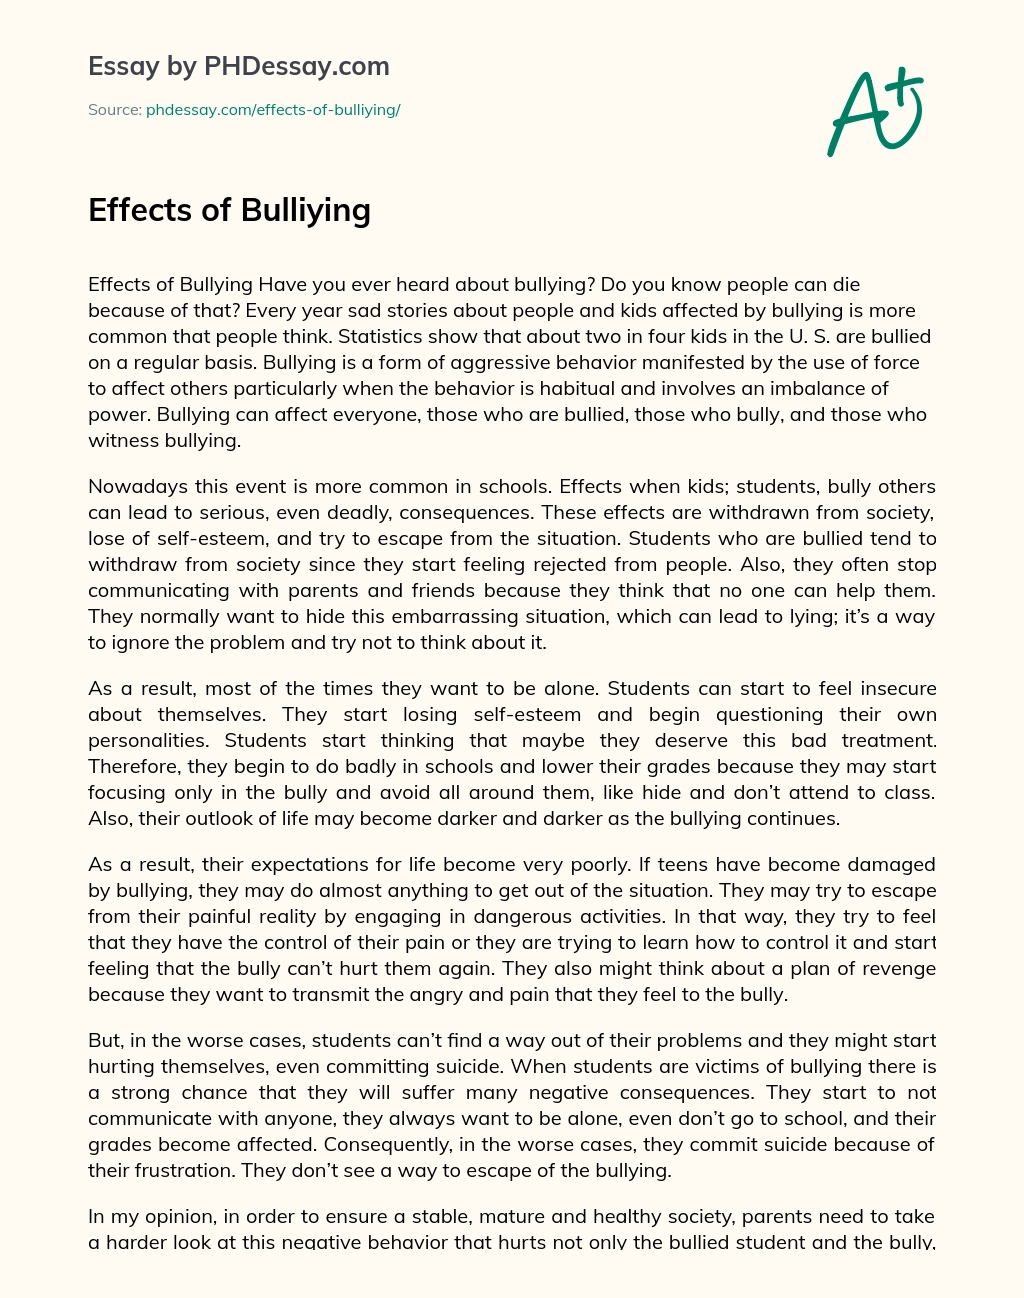 Effects of Bulliying essay